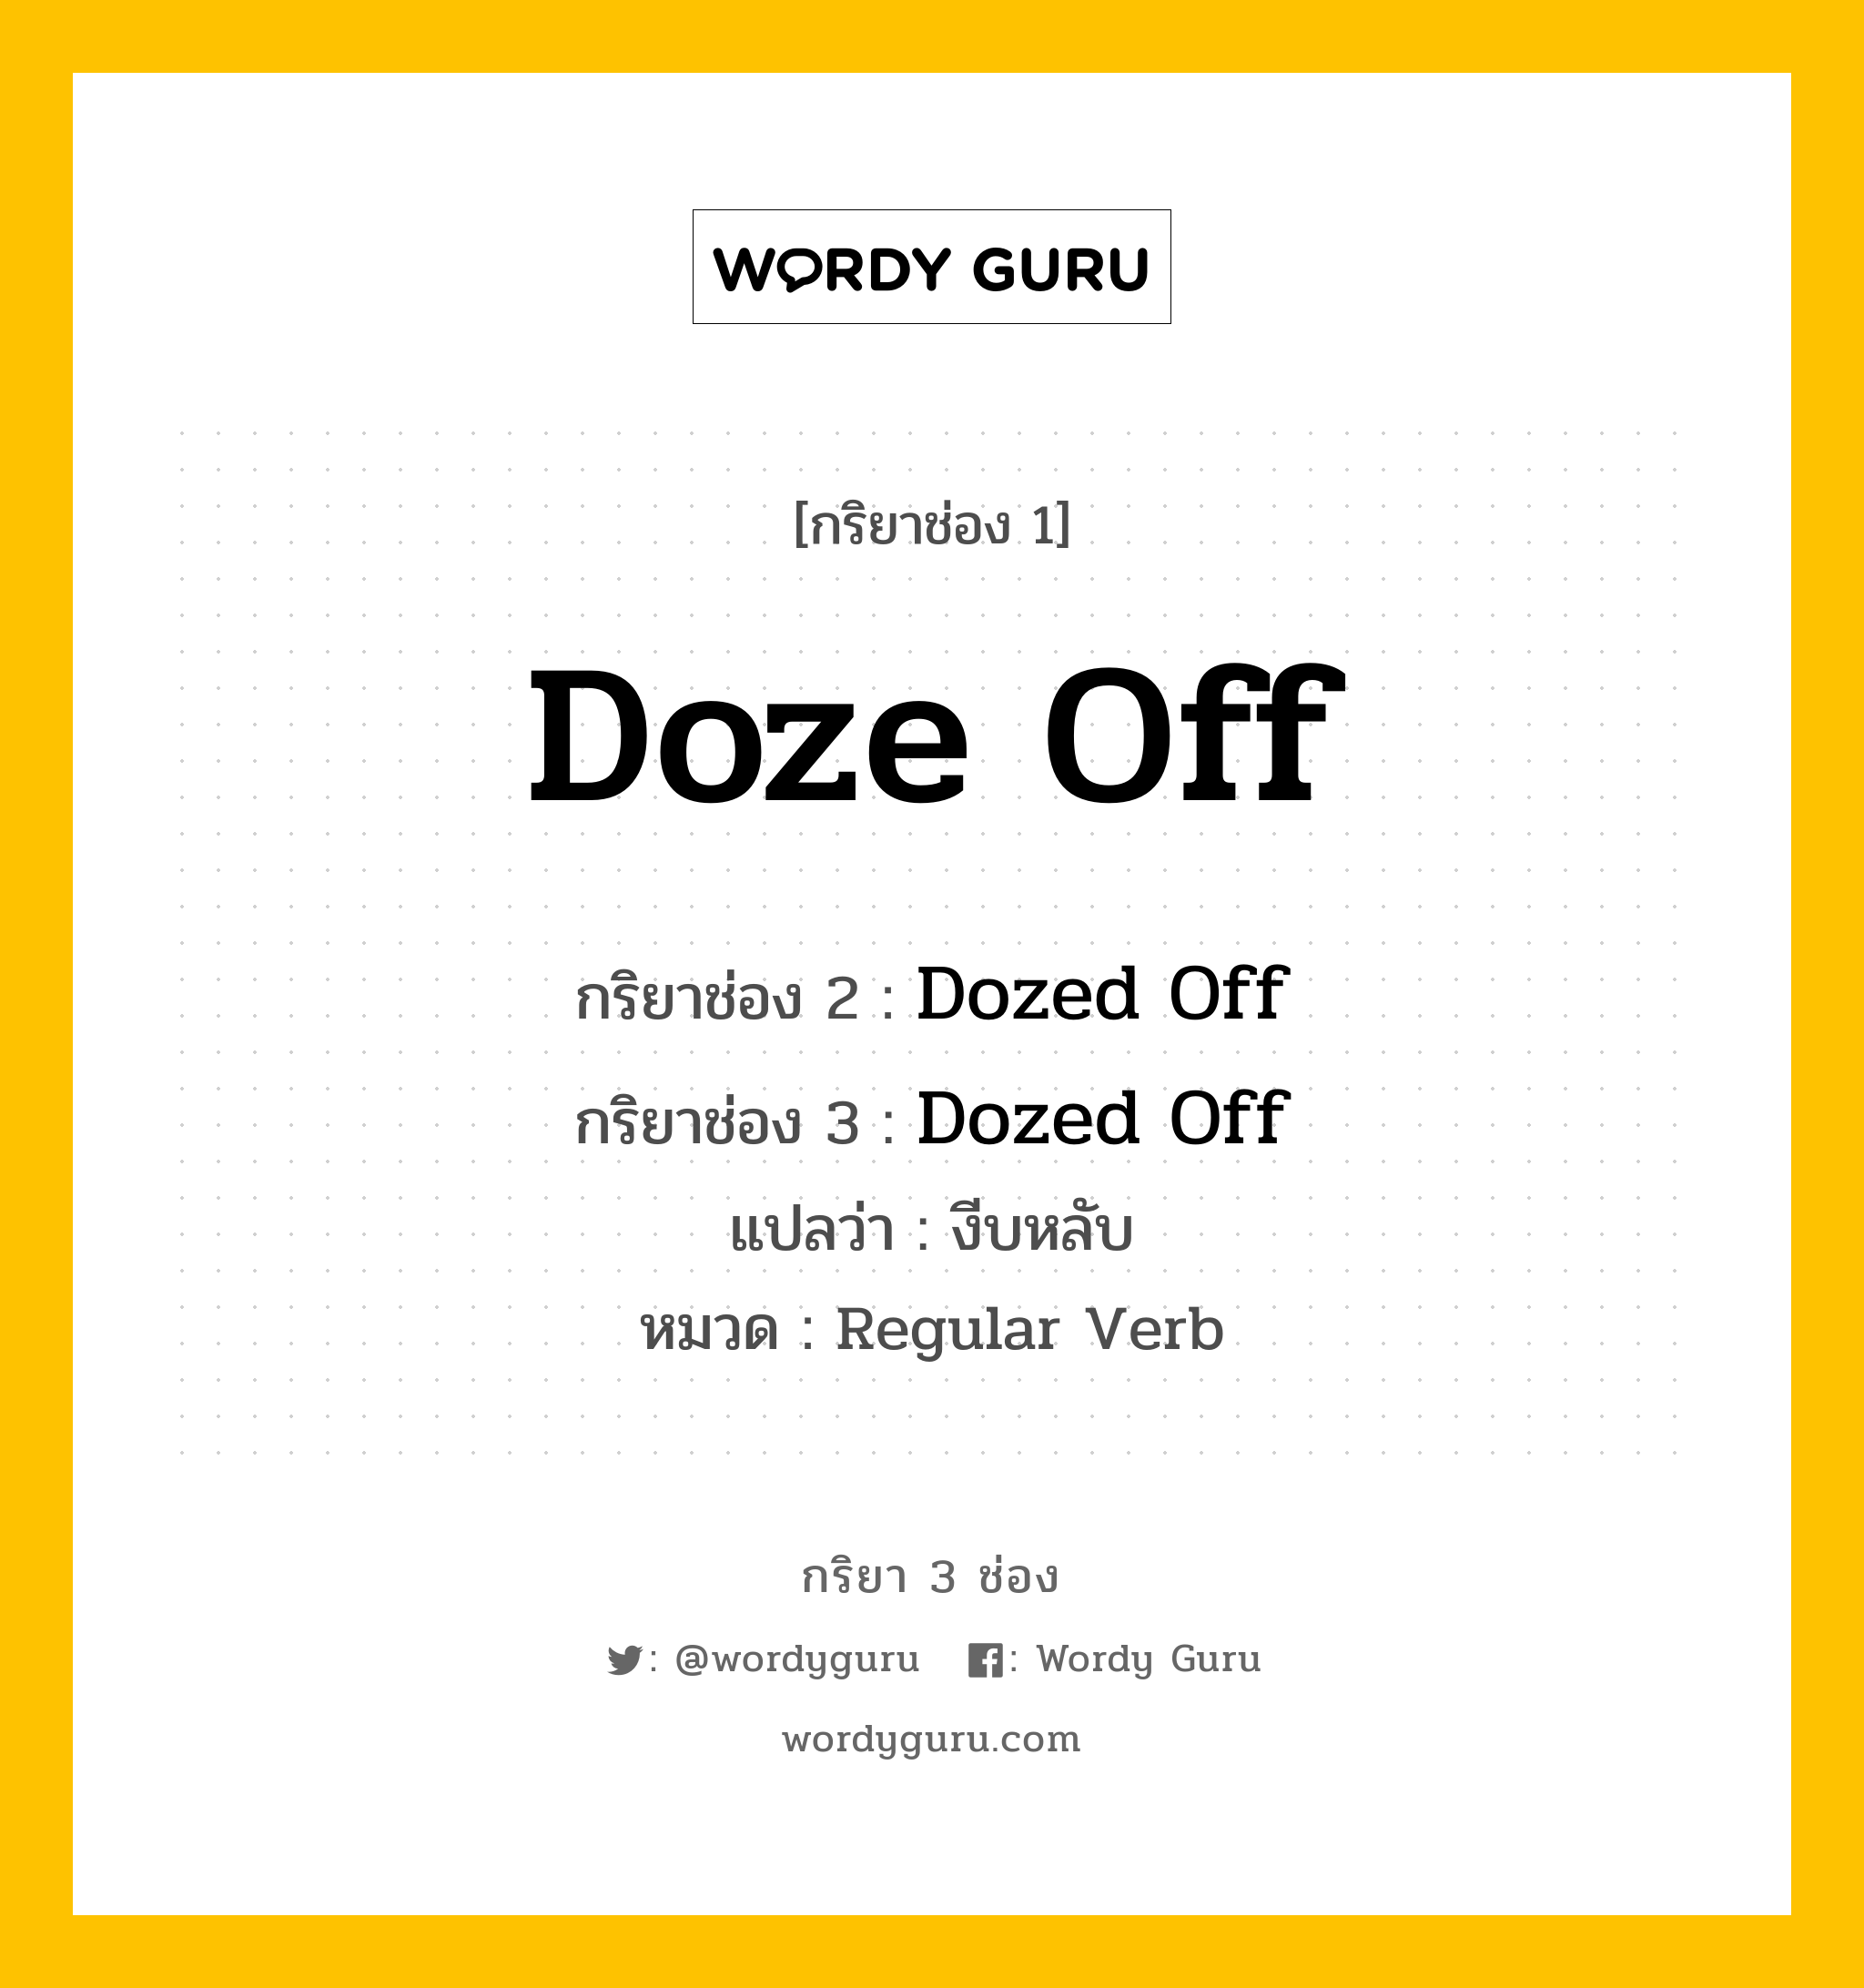 กริยา 3 ช่อง: Doze Off ช่อง 2 Doze Off ช่อง 3 คืออะไร, กริยาช่อง 1 Doze Off กริยาช่อง 2 Dozed Off กริยาช่อง 3 Dozed Off แปลว่า งีบหลับ หมวด Regular Verb หมวด Regular Verb